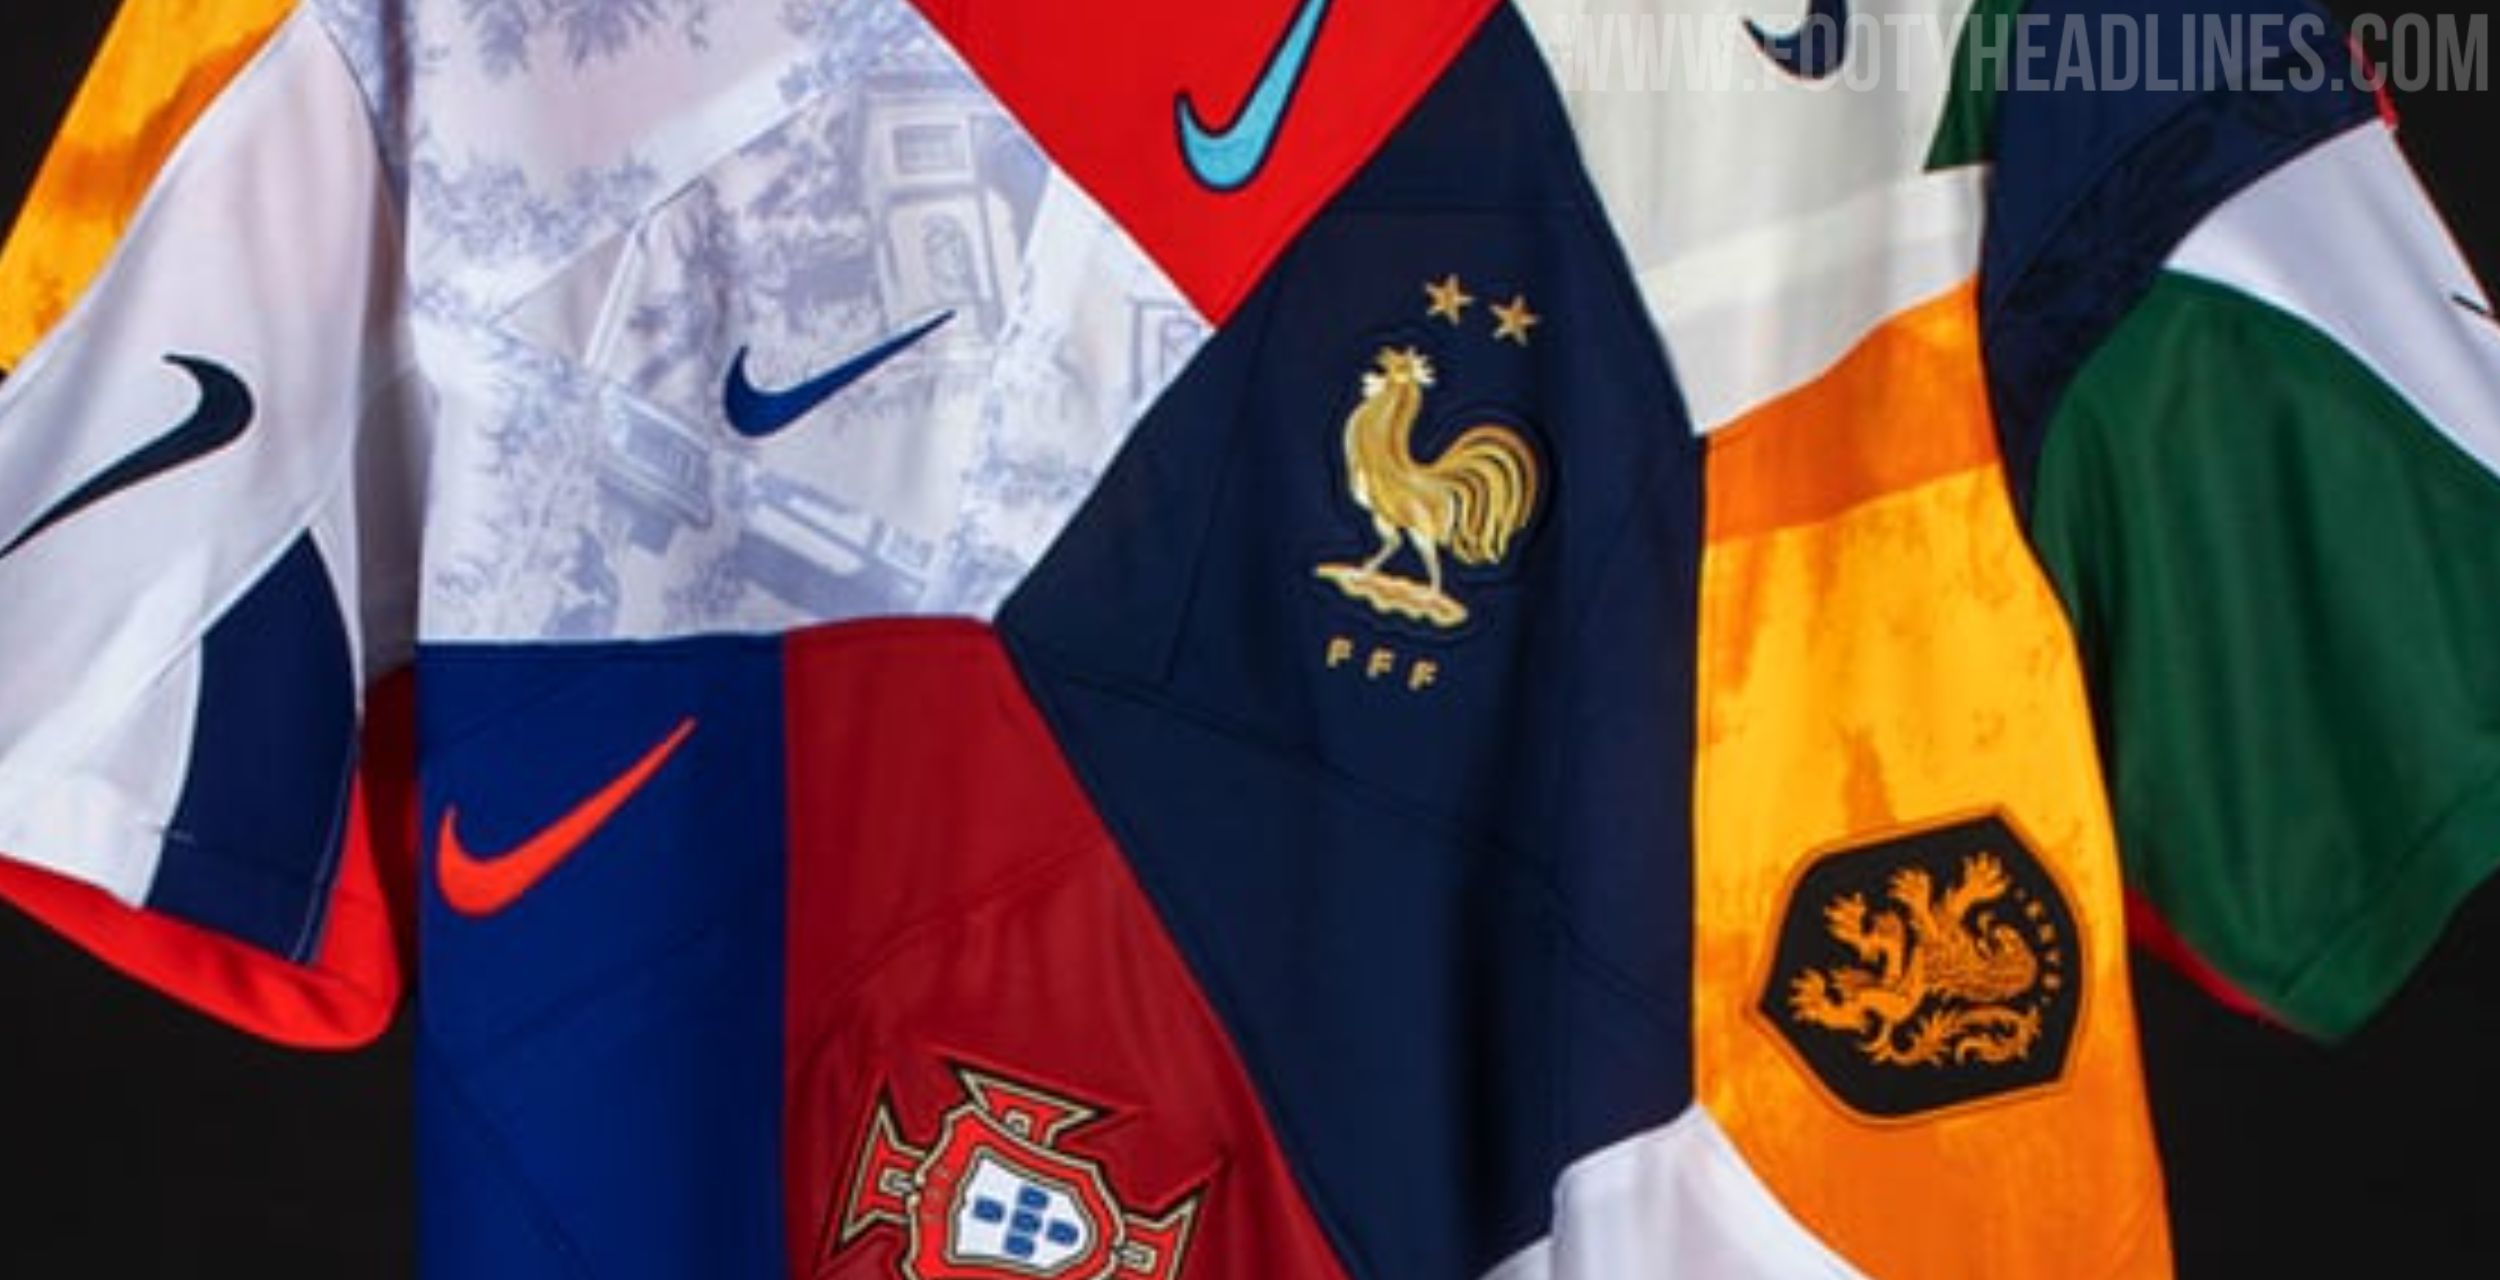 Nike célèbre la Coupe du Monde de football Qatar 2022 avec un maillot «  mashup » de ses principales sélections (« The One Nike Jersey ») 